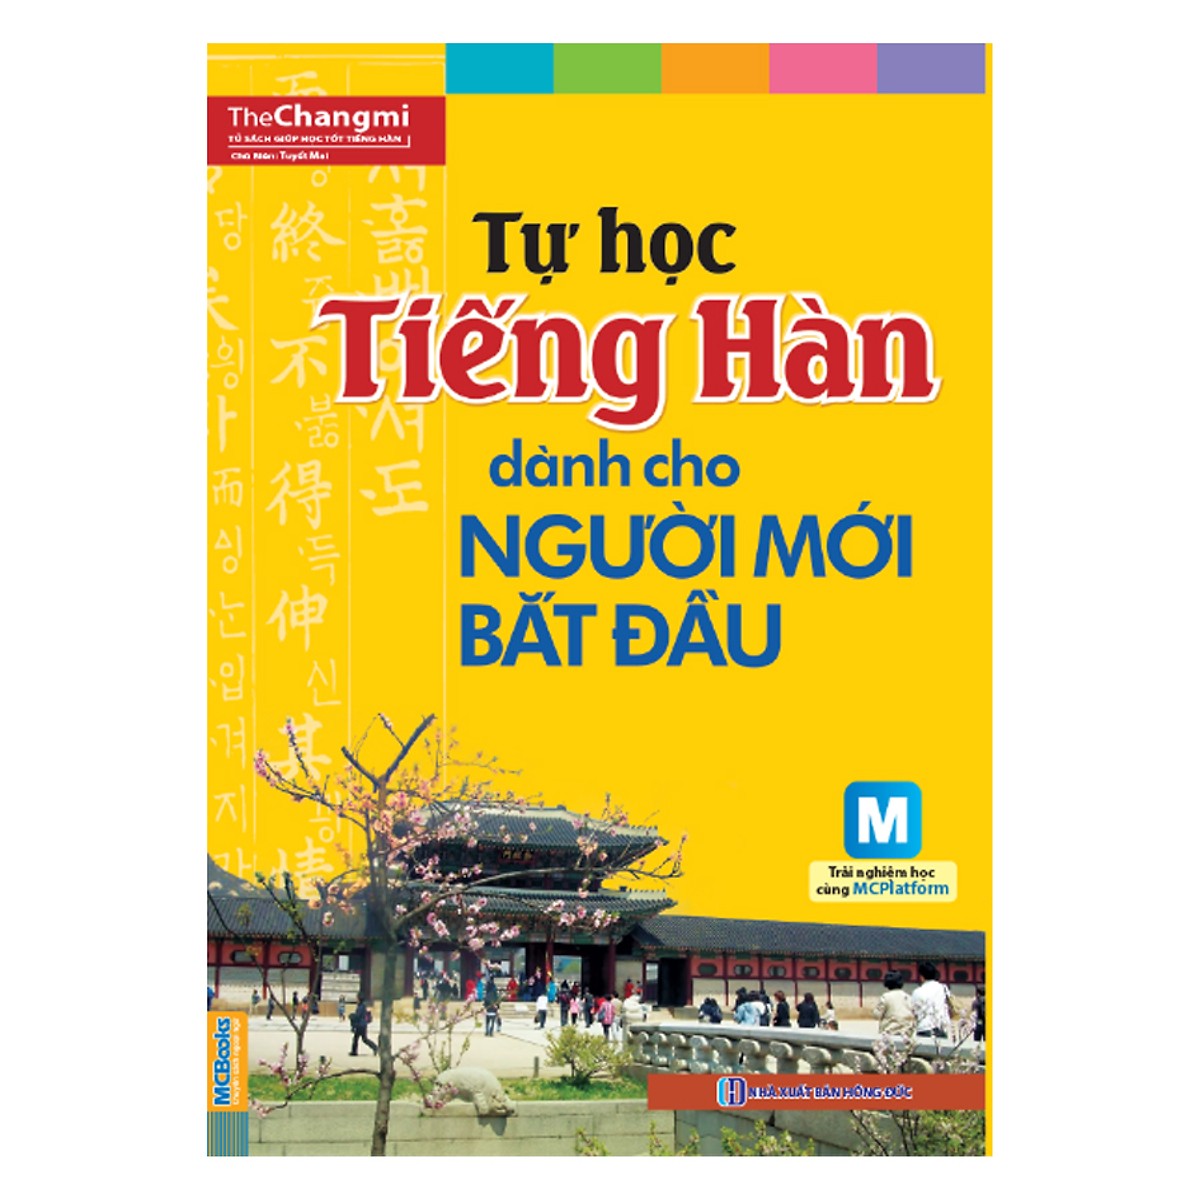 Bộ Sách Tự Học Tiếng Hàn: Ngữ Pháp Tiếng Hàn Thông Dụng Sơ Cấp +Tự Học Tiếng Hàn Dành Cho Người Mới Bắt Đầu + Tập Viết Tiếng Hàn Dành Cho Người Mới Bắt Đầu (Học Kèm App MCBooks) (Tặng Audio Luyện Nghe)